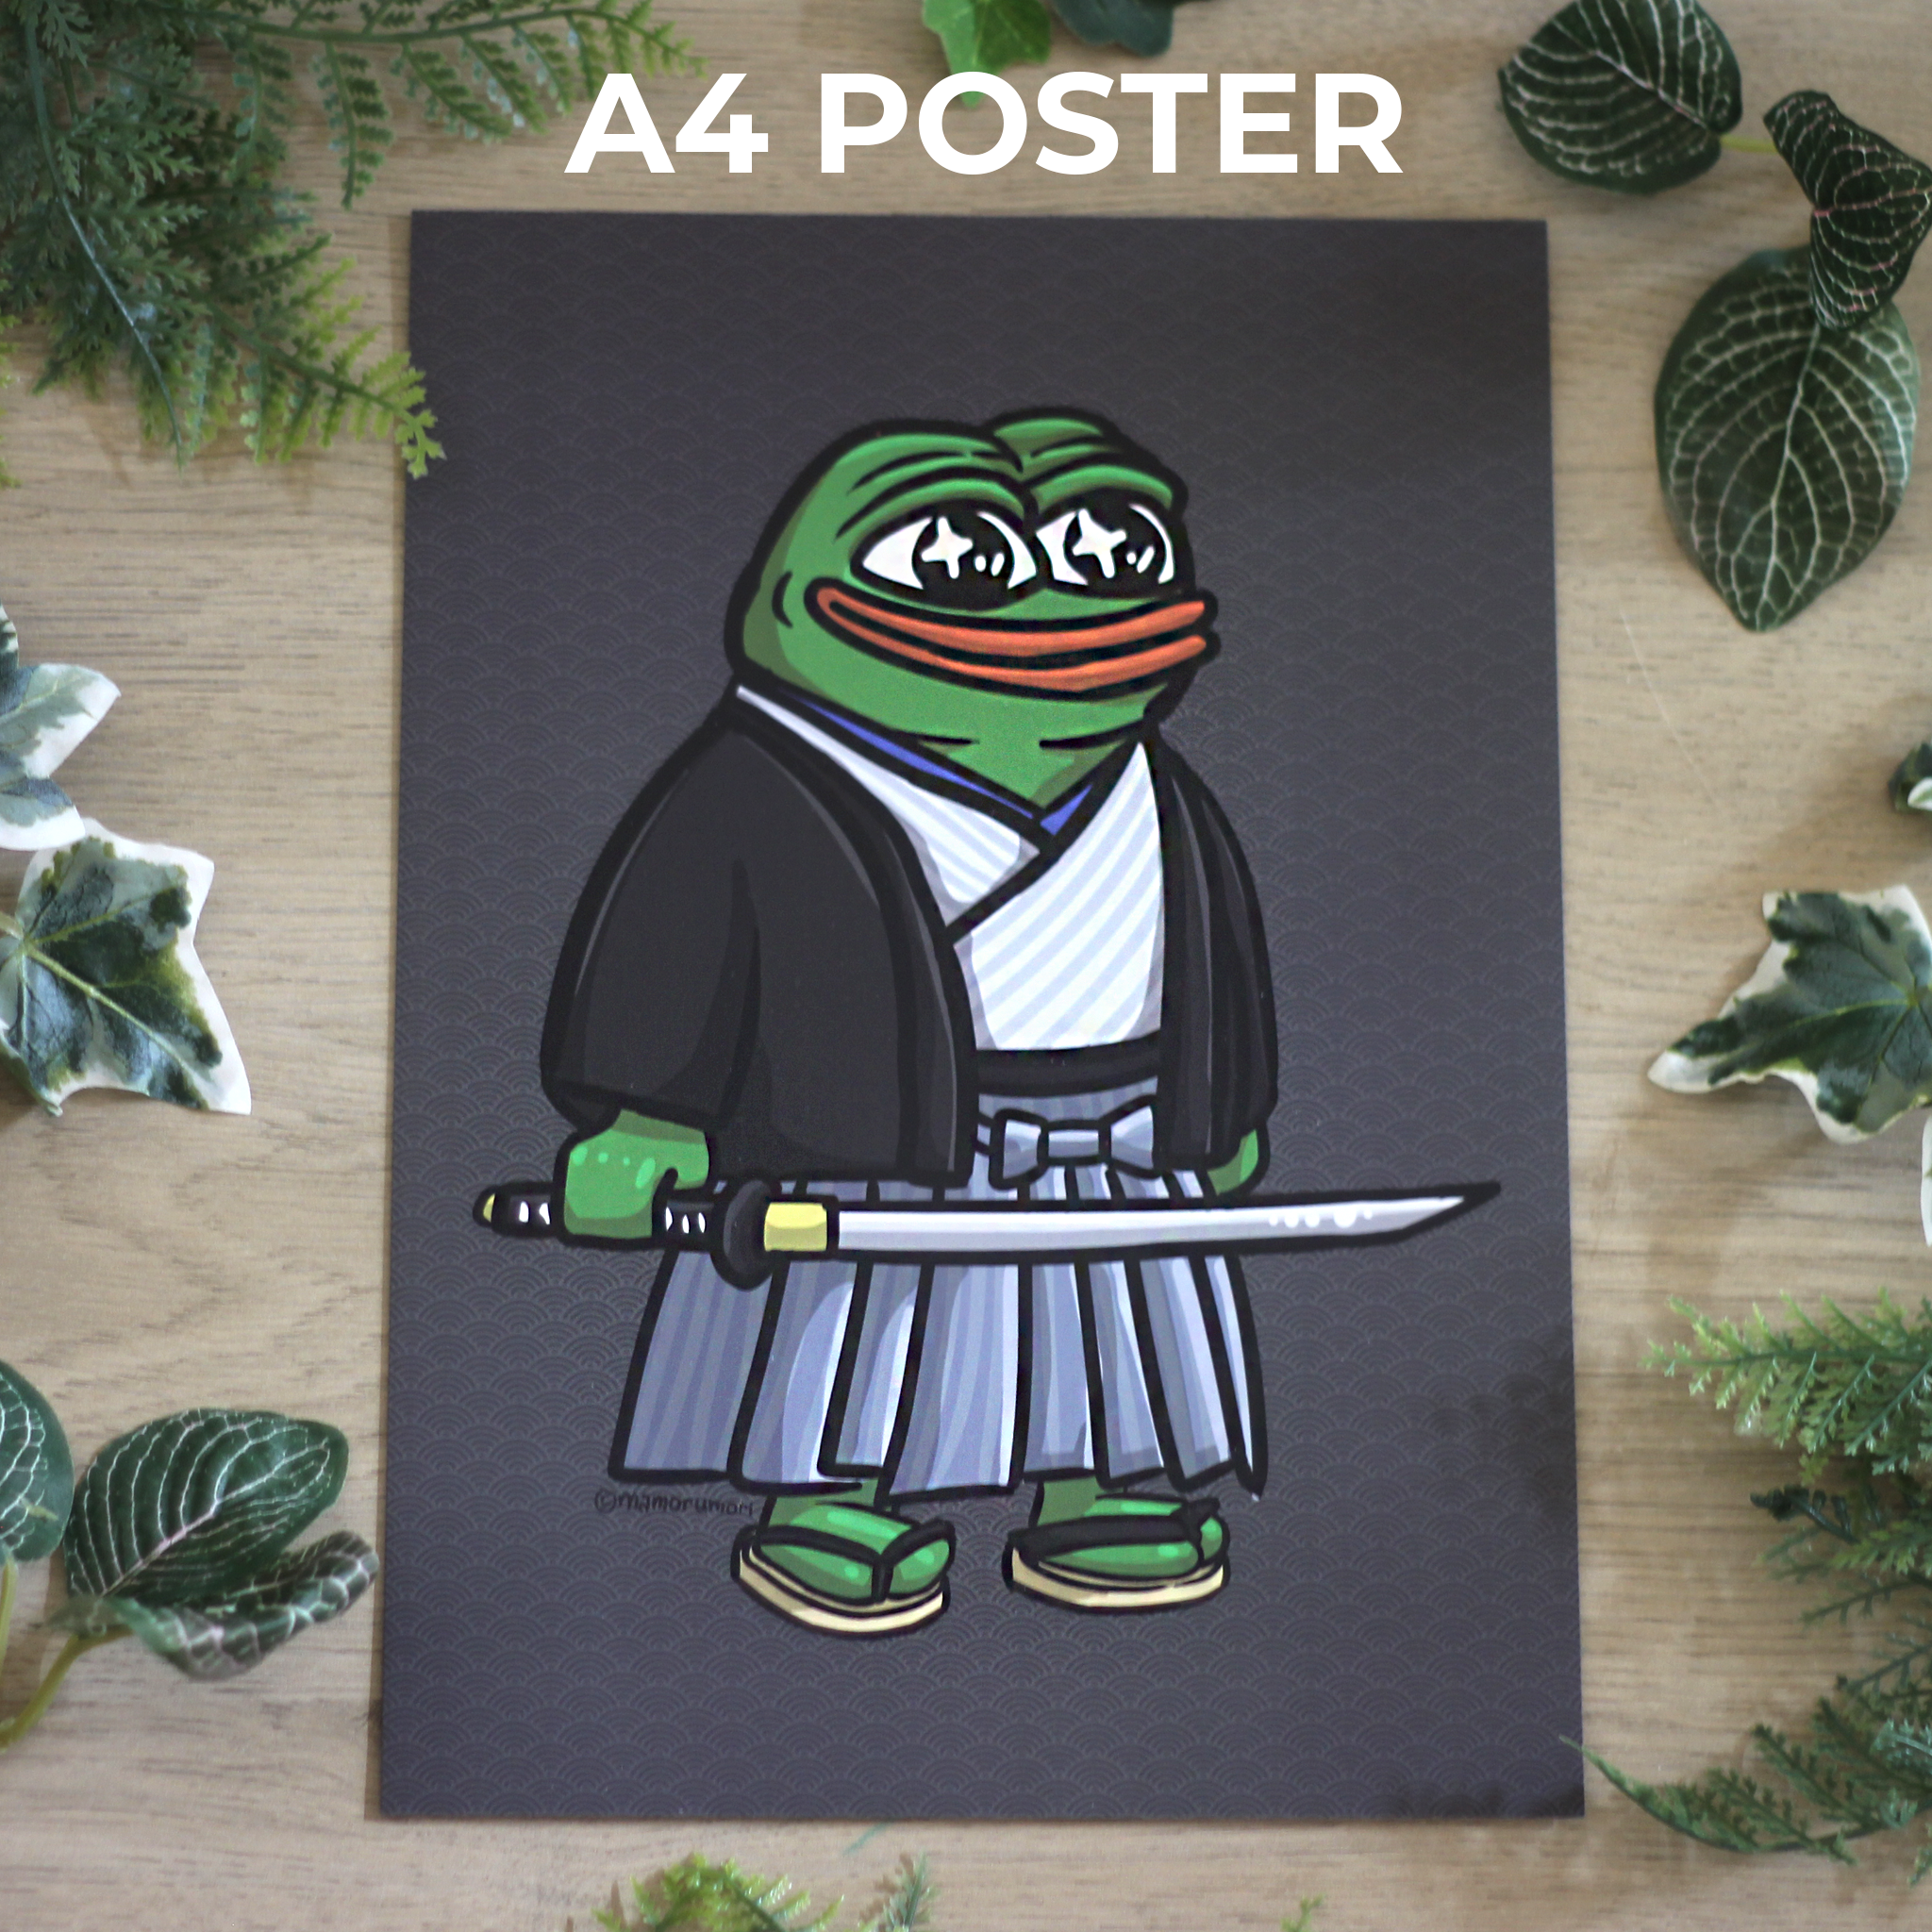 A4 Poster - Peepo Samurai